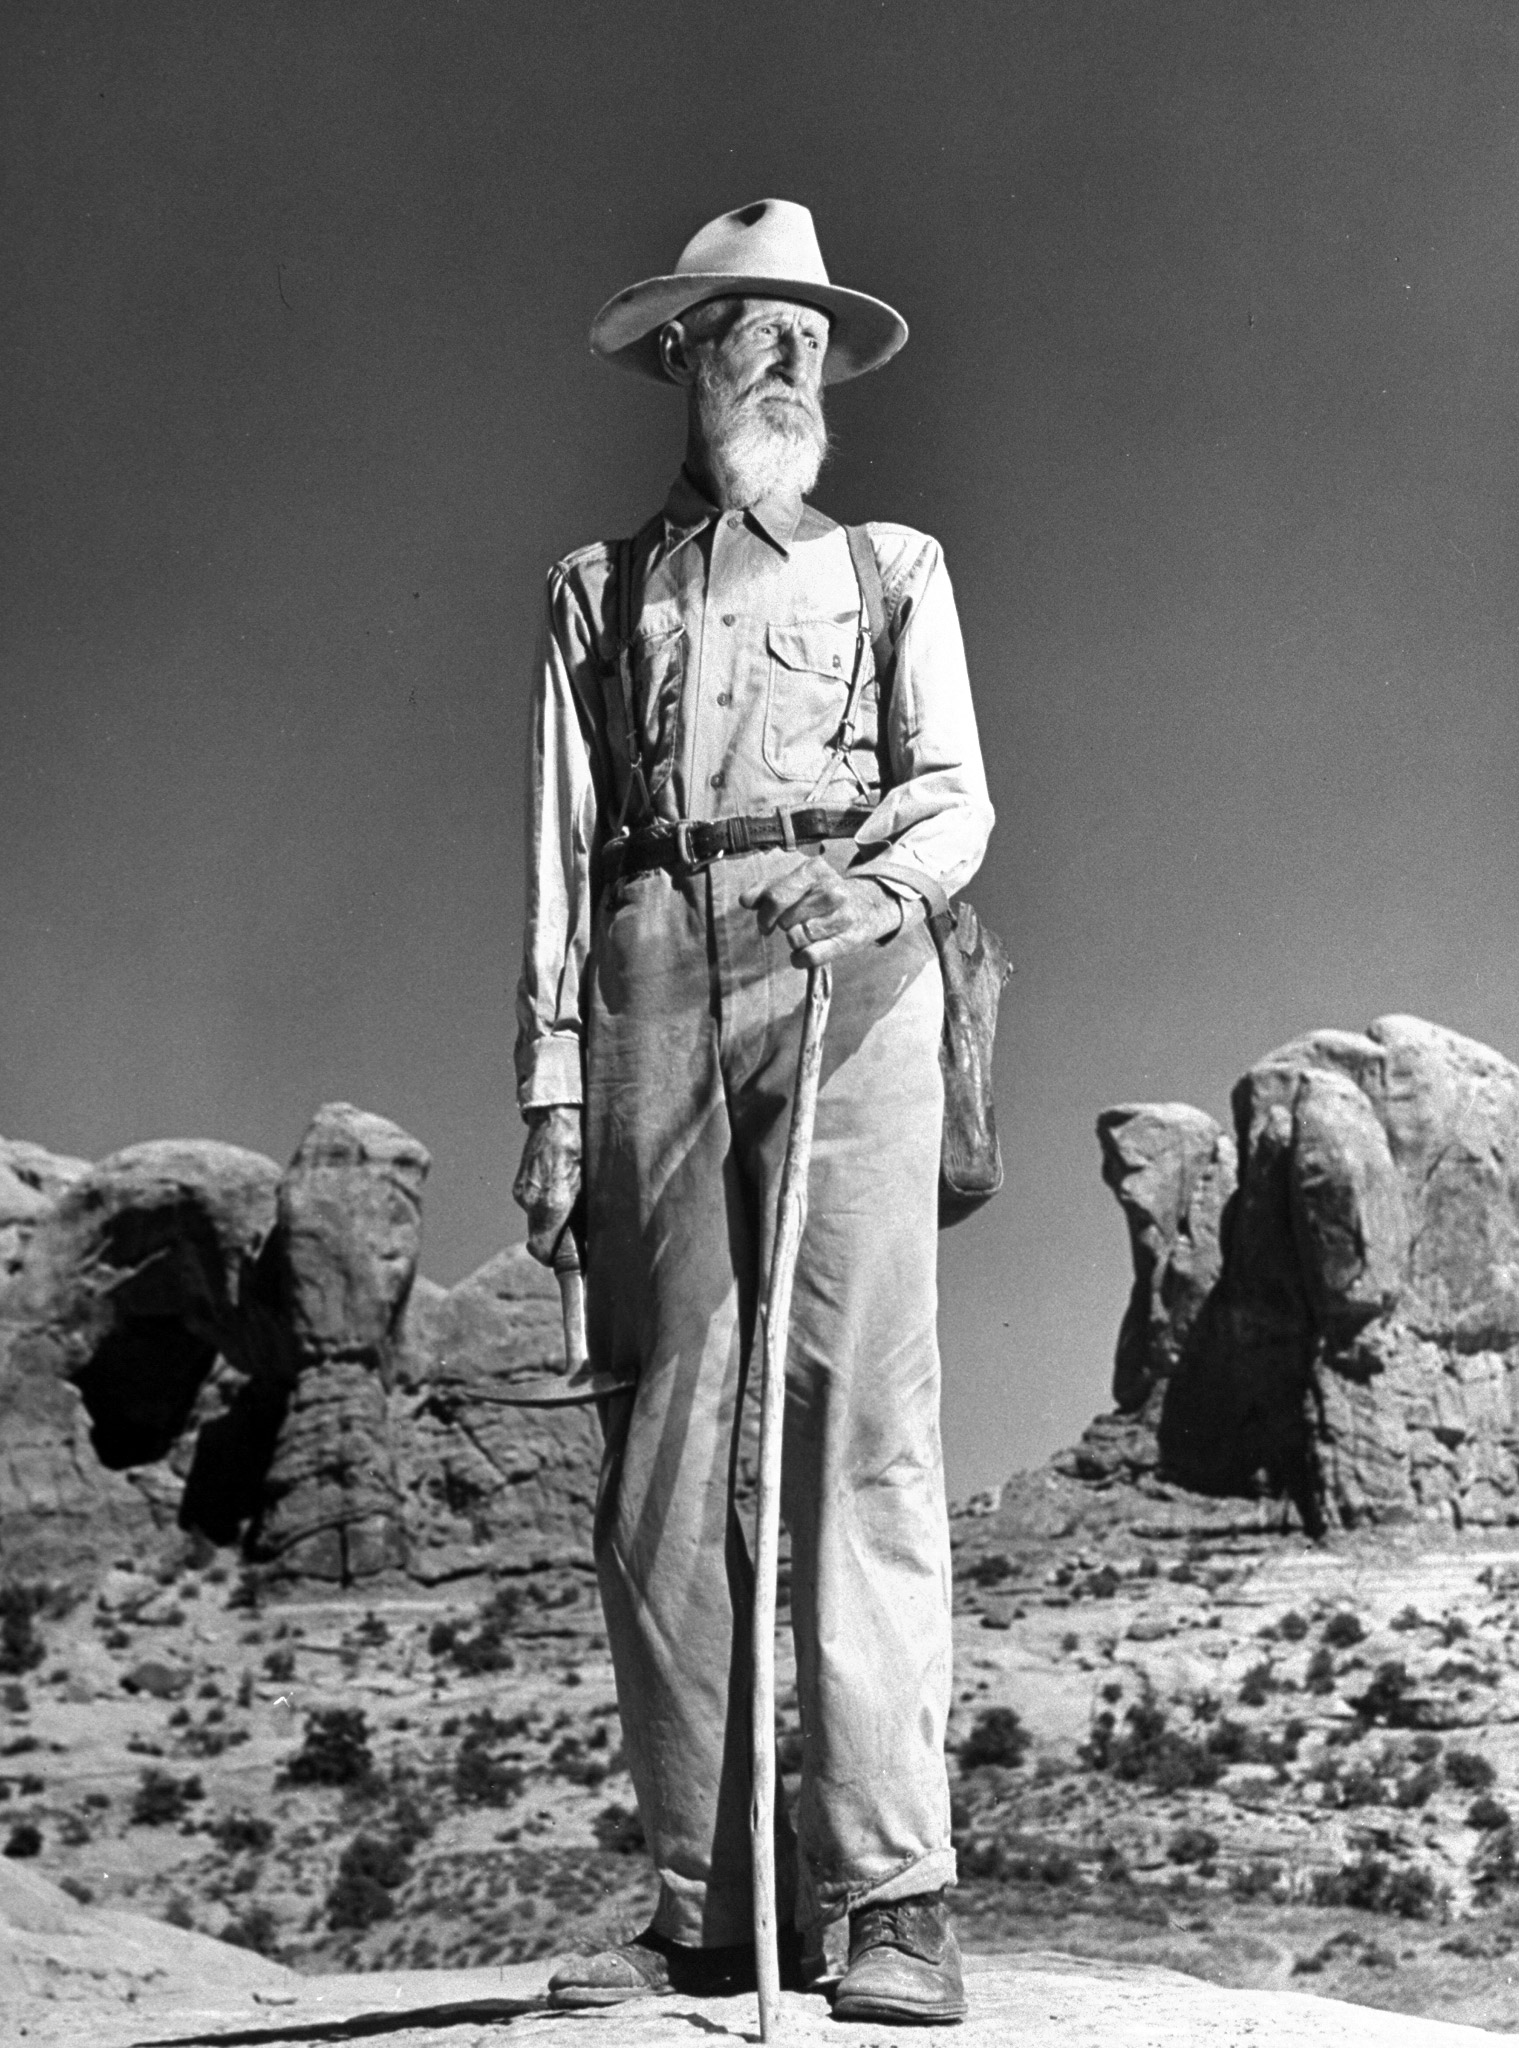 Utah Desert, 1947